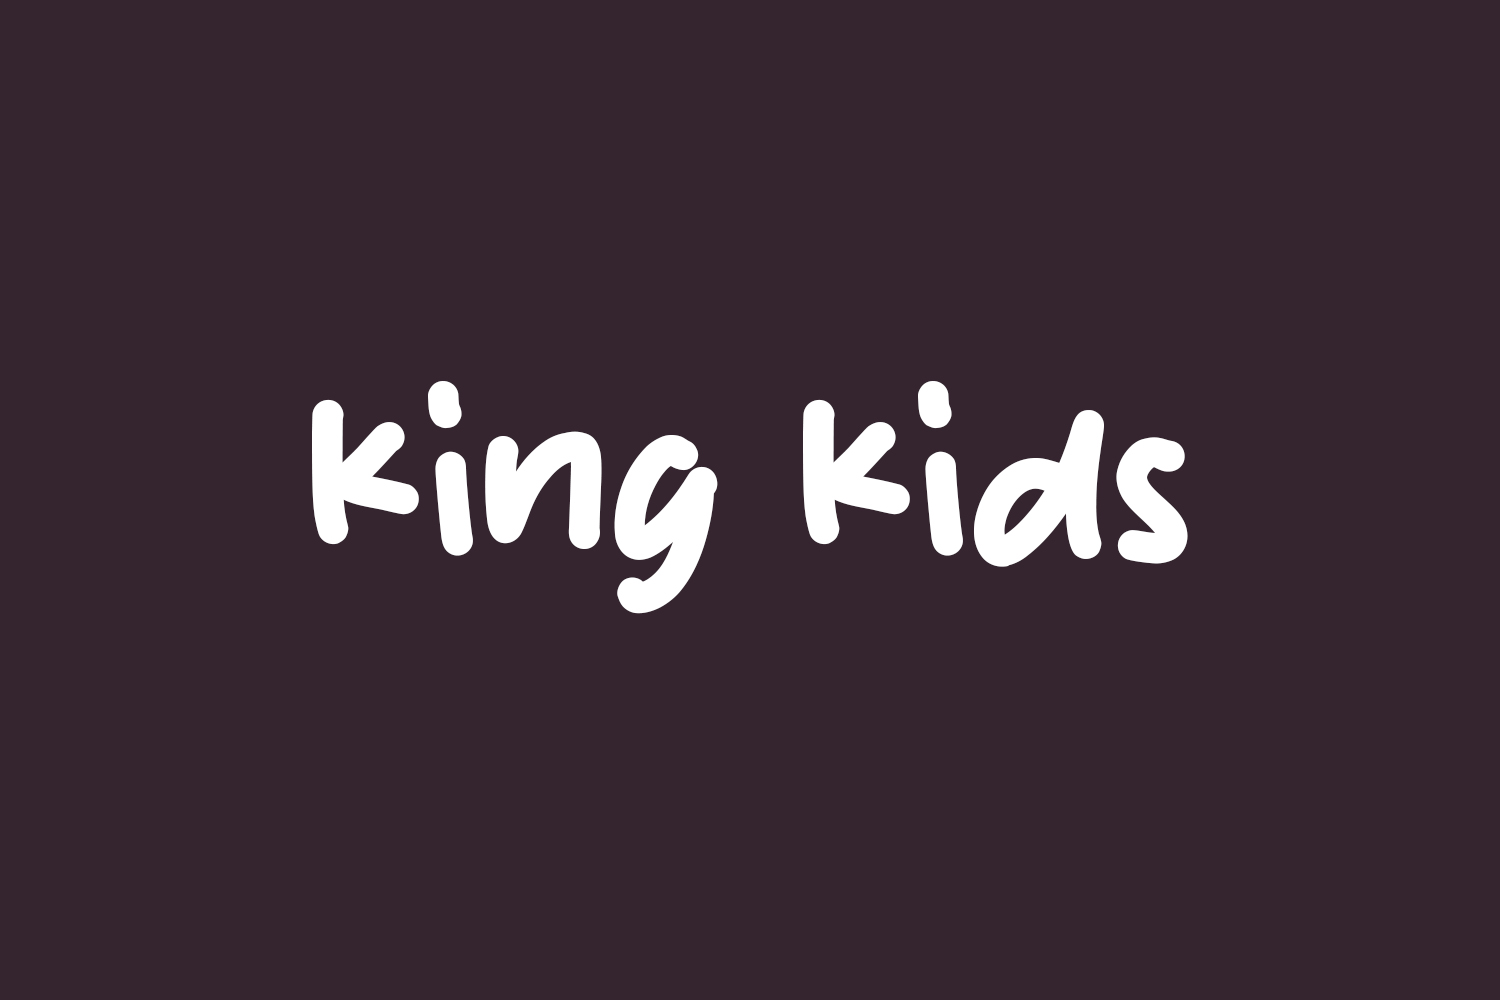 King Kids Free Font